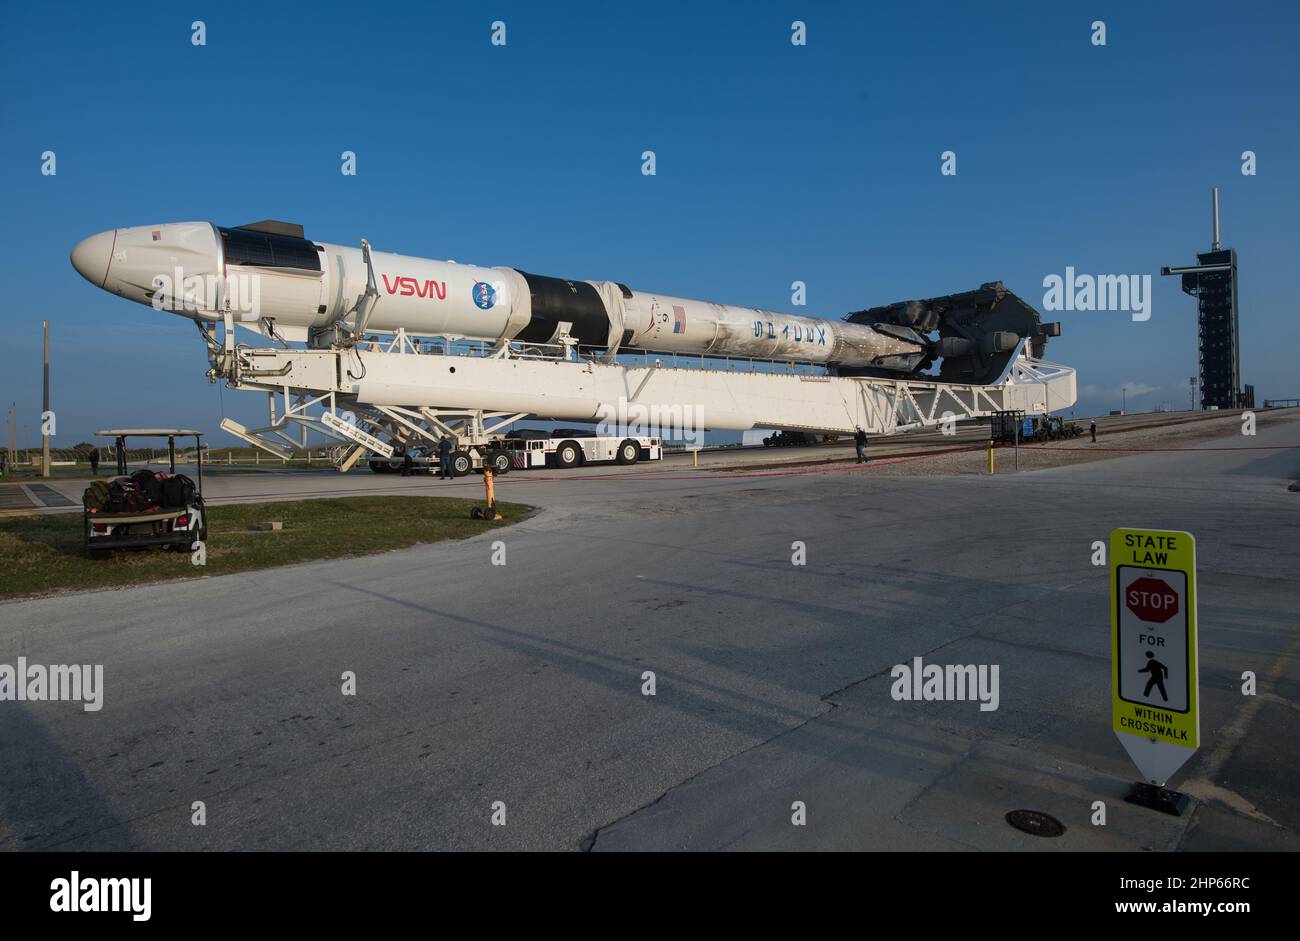 Eine SpaceX Falcon 9-Rakete mit der Crew Dragon-Sonde des Unternehmens an Bord wird beim Start des Launch Complex 39A gesehen, da die Vorbereitungen für die Crew-2-Mission am Freitag, den 16. April 2021, im Kennedy Space Center der NASA in Florida fortgesetzt werden. Stockfoto